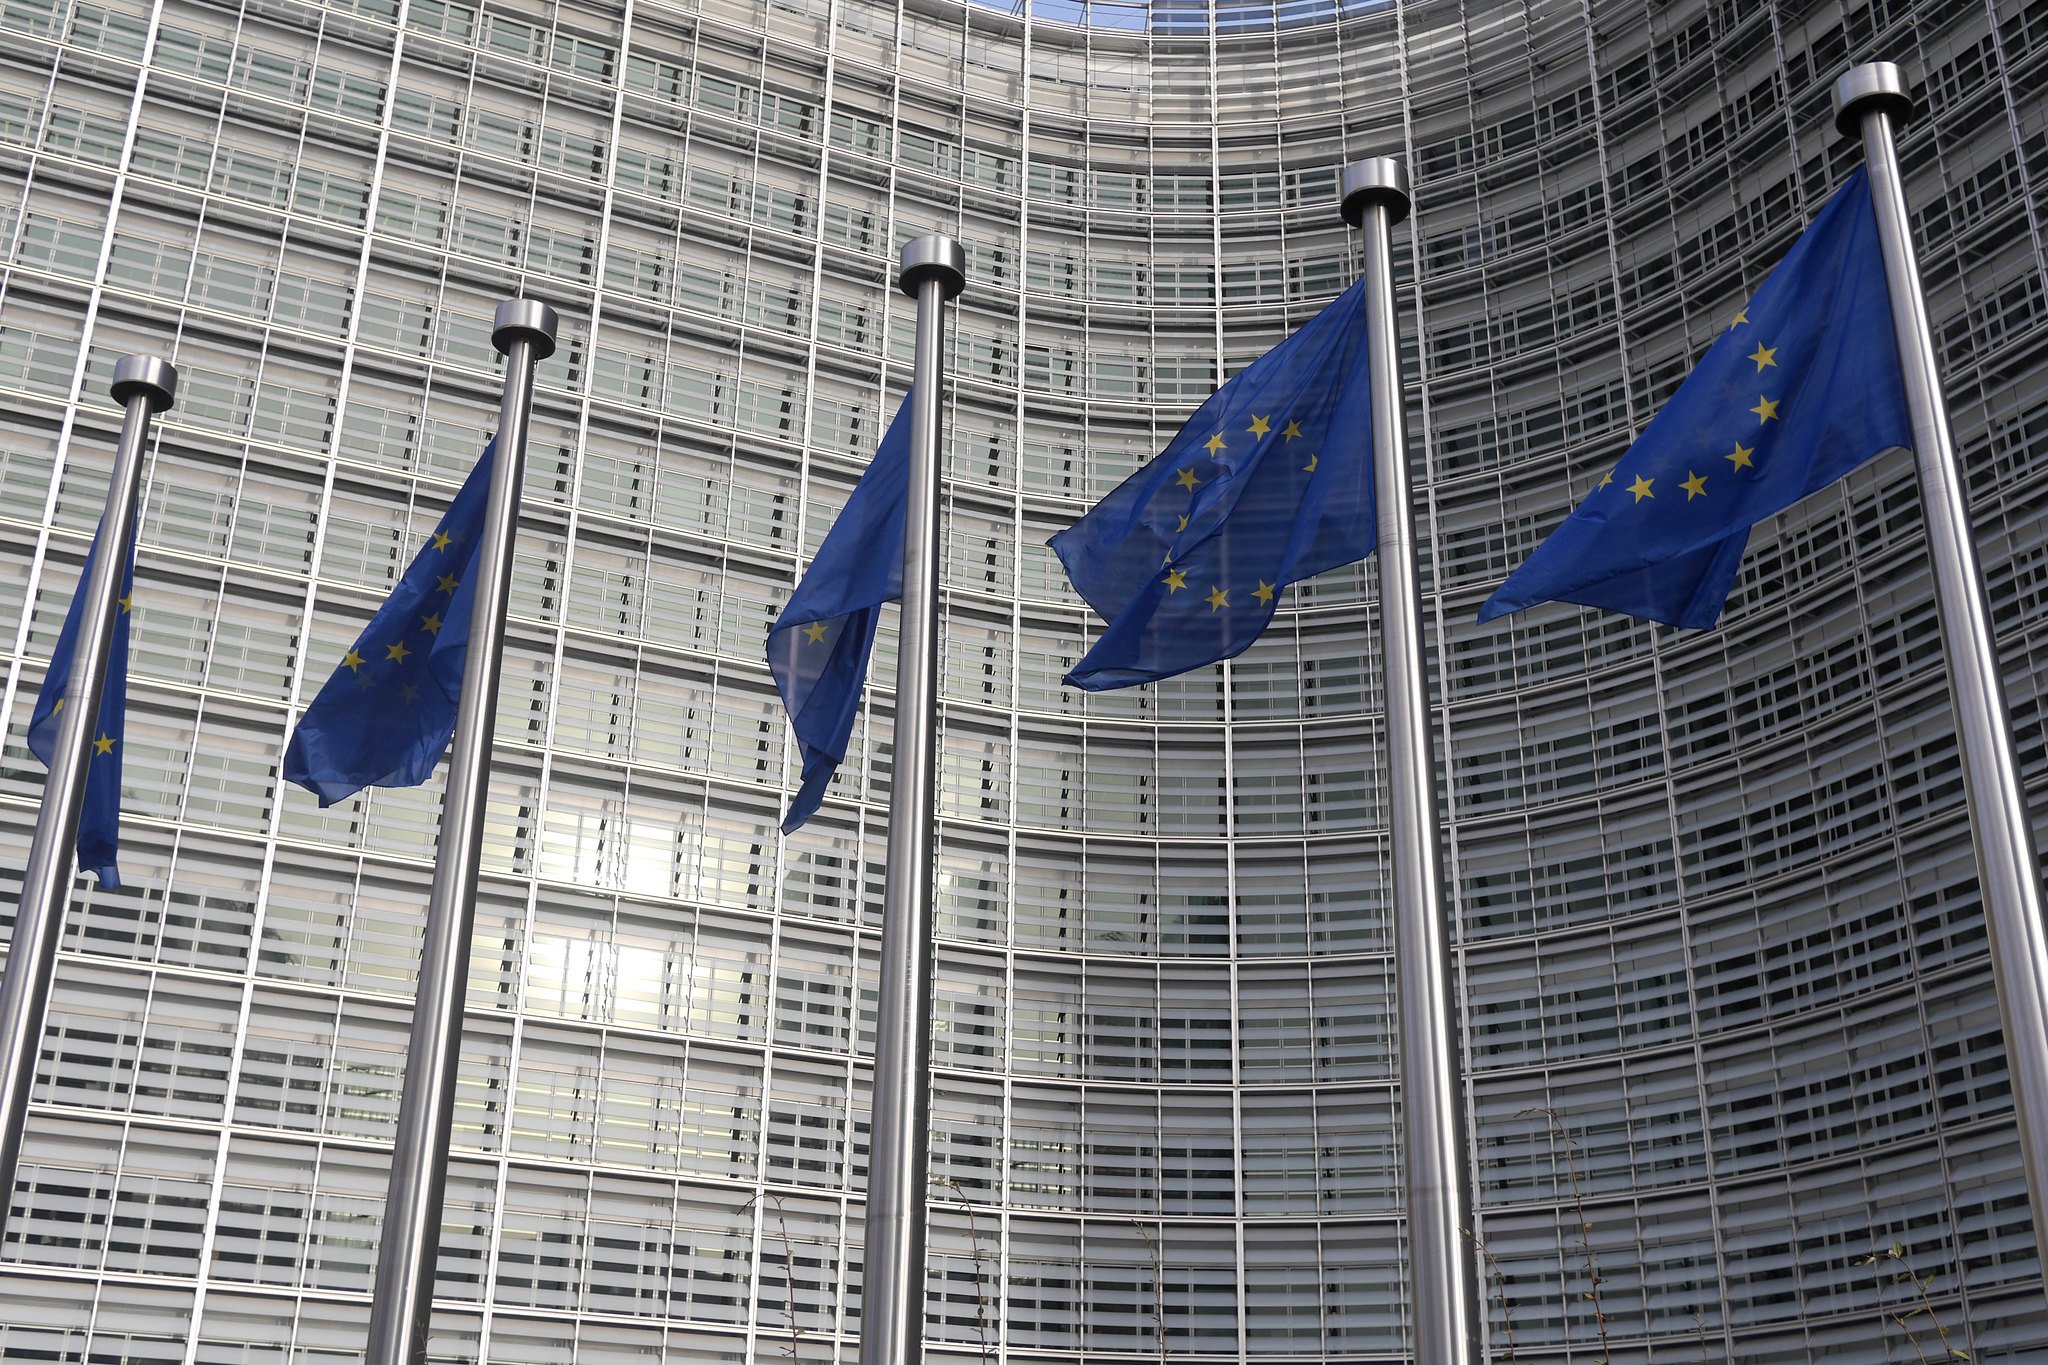 Bandeiras em frente à sede da Comissão Europeia (Foto: Flick Liber Europe)